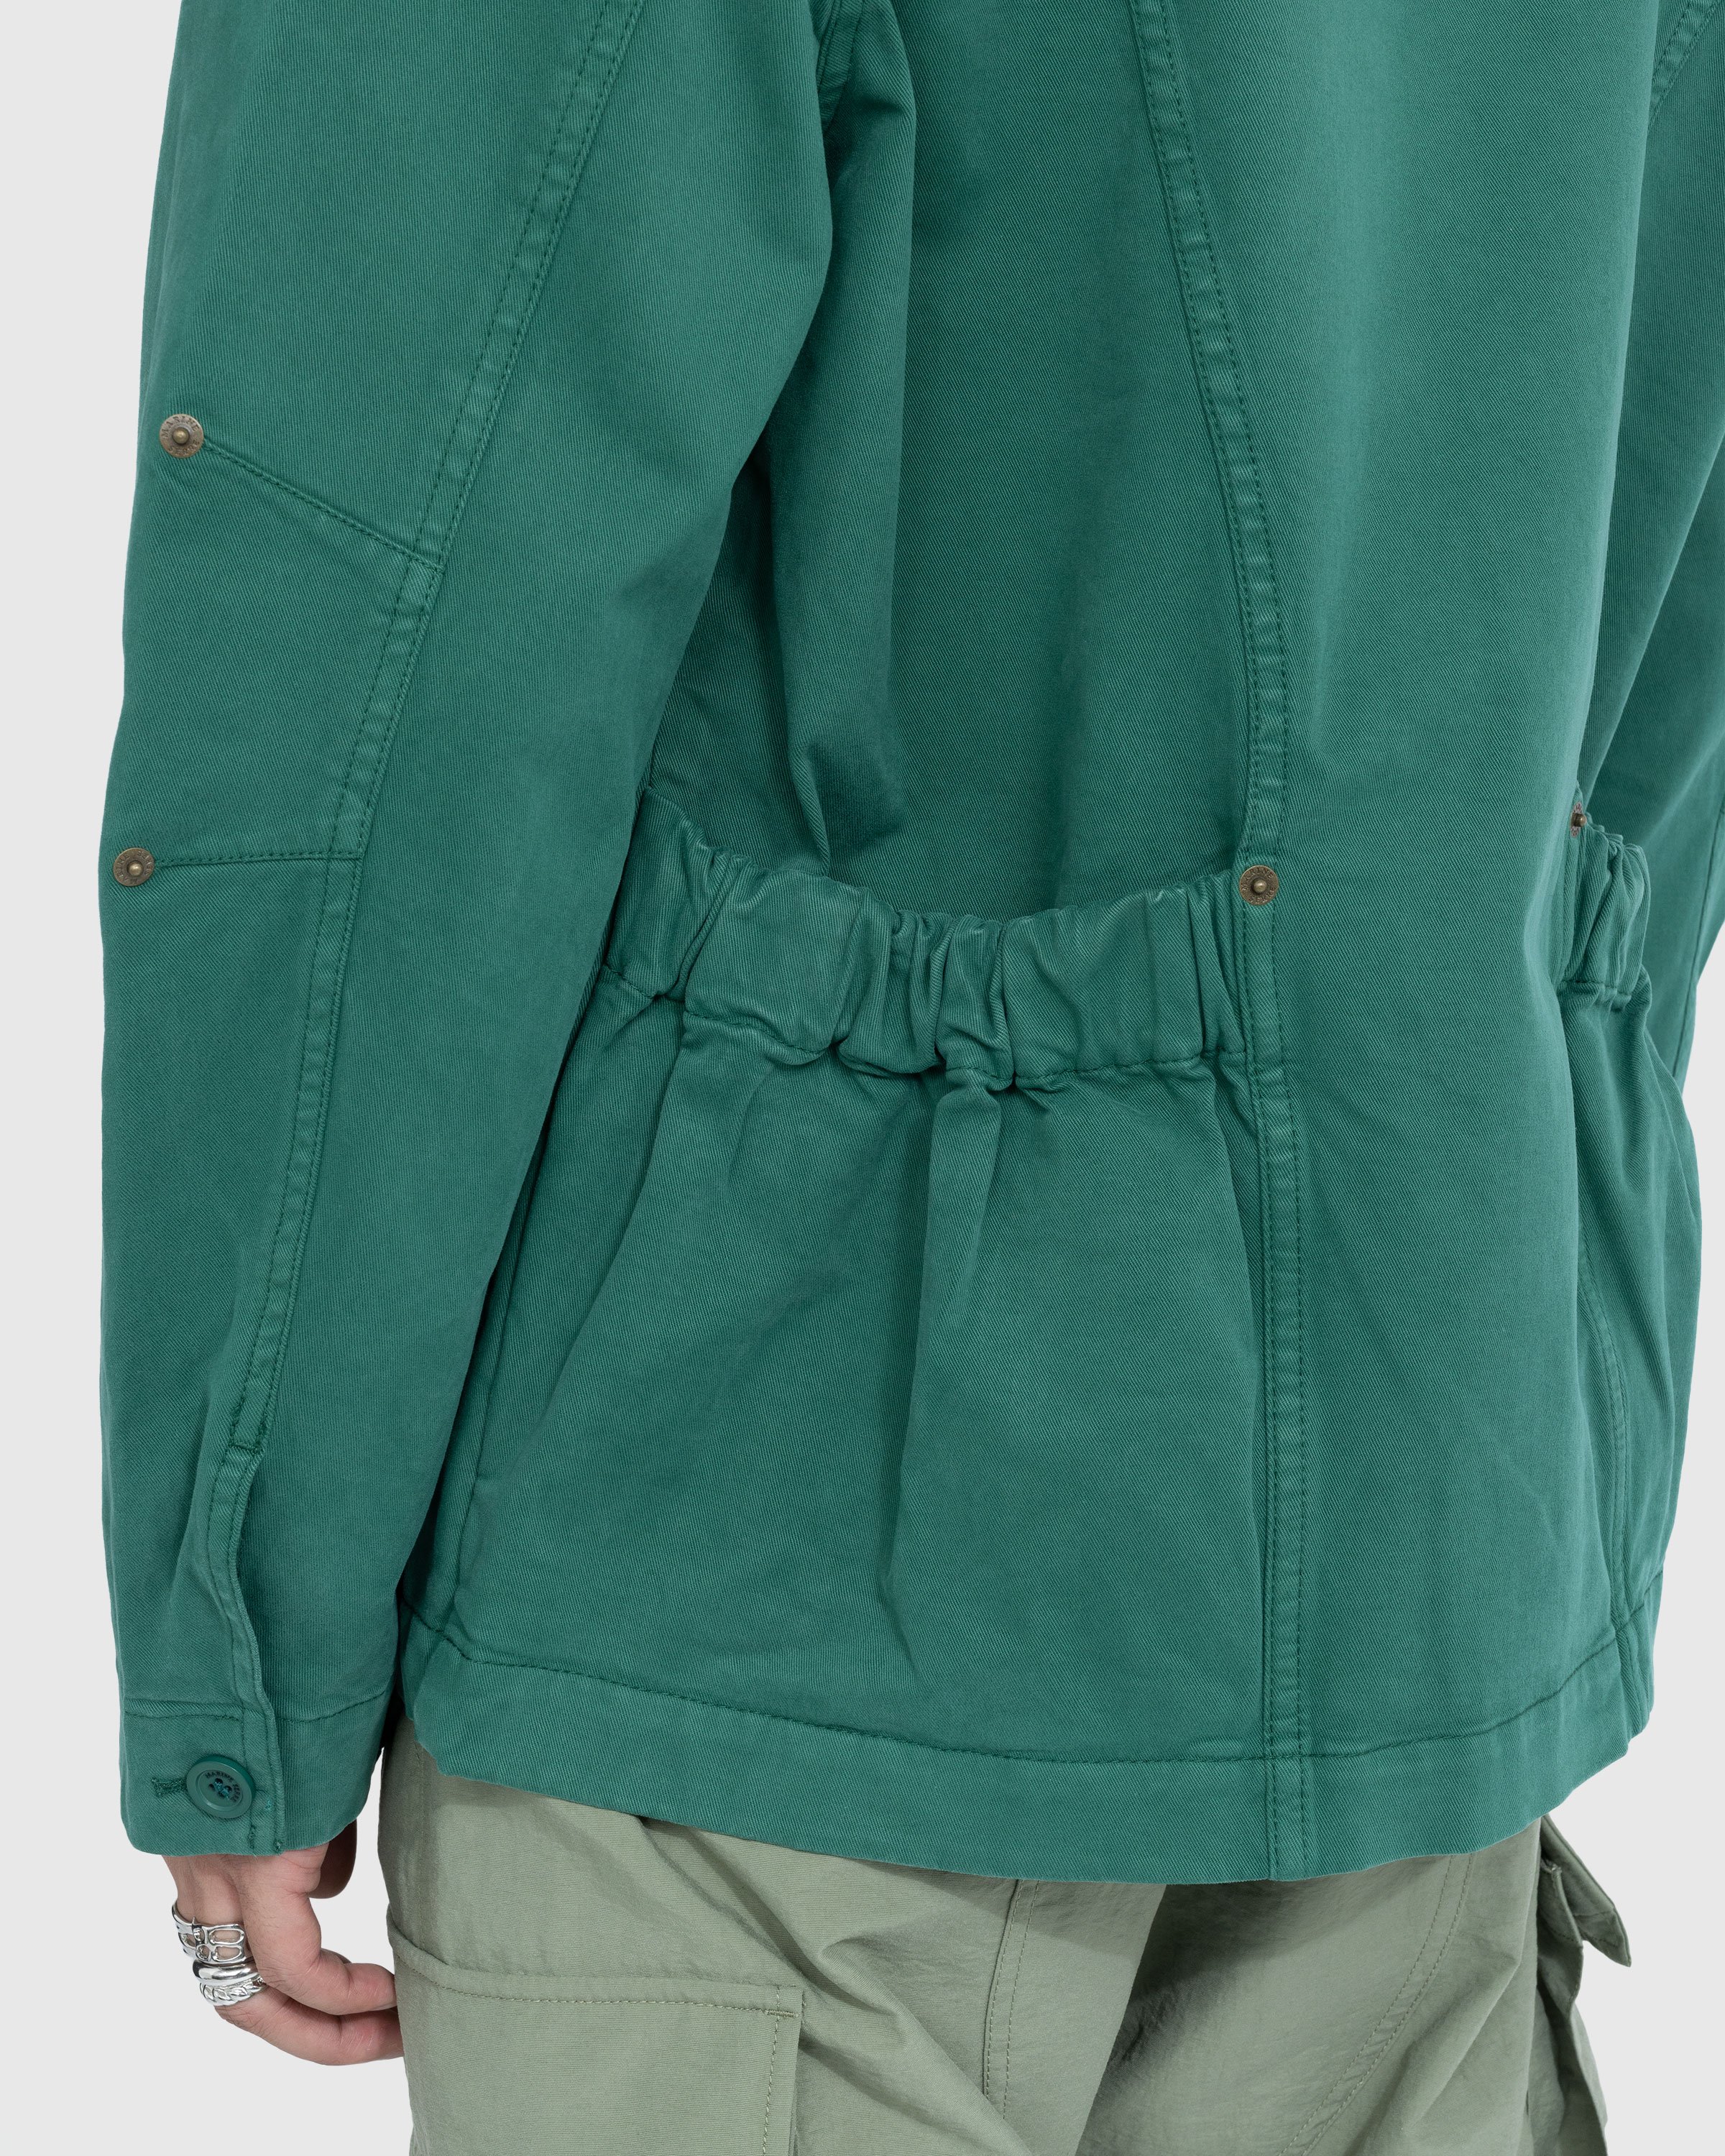 Marine Serre - Workwear Jacket Evergreen - Clothing - Green - Image 6